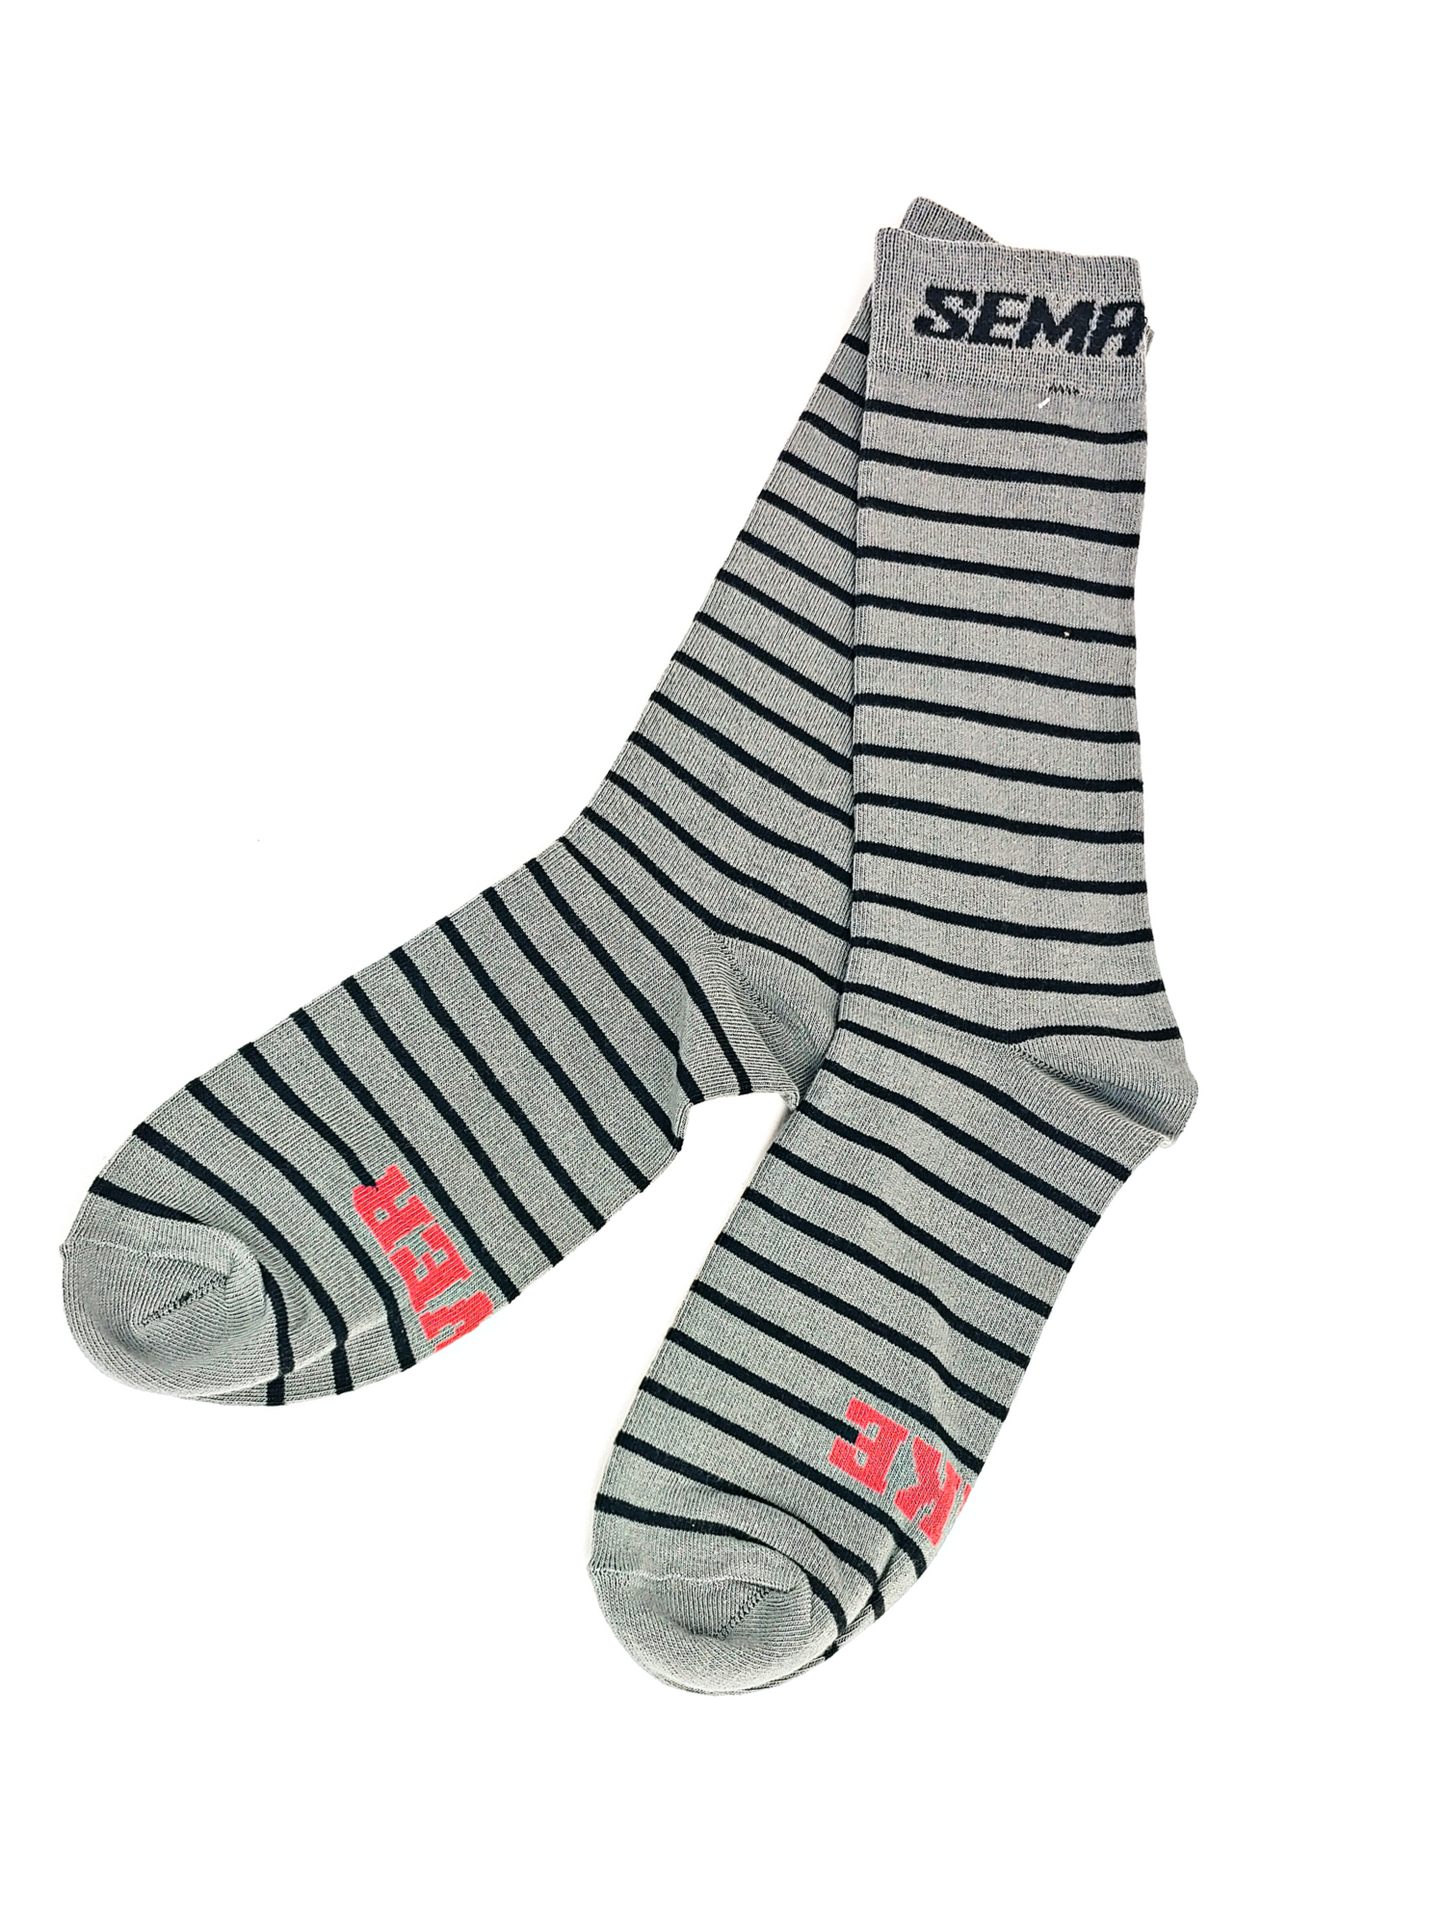 SEMA Socks - Black/Grey - Limited Edition